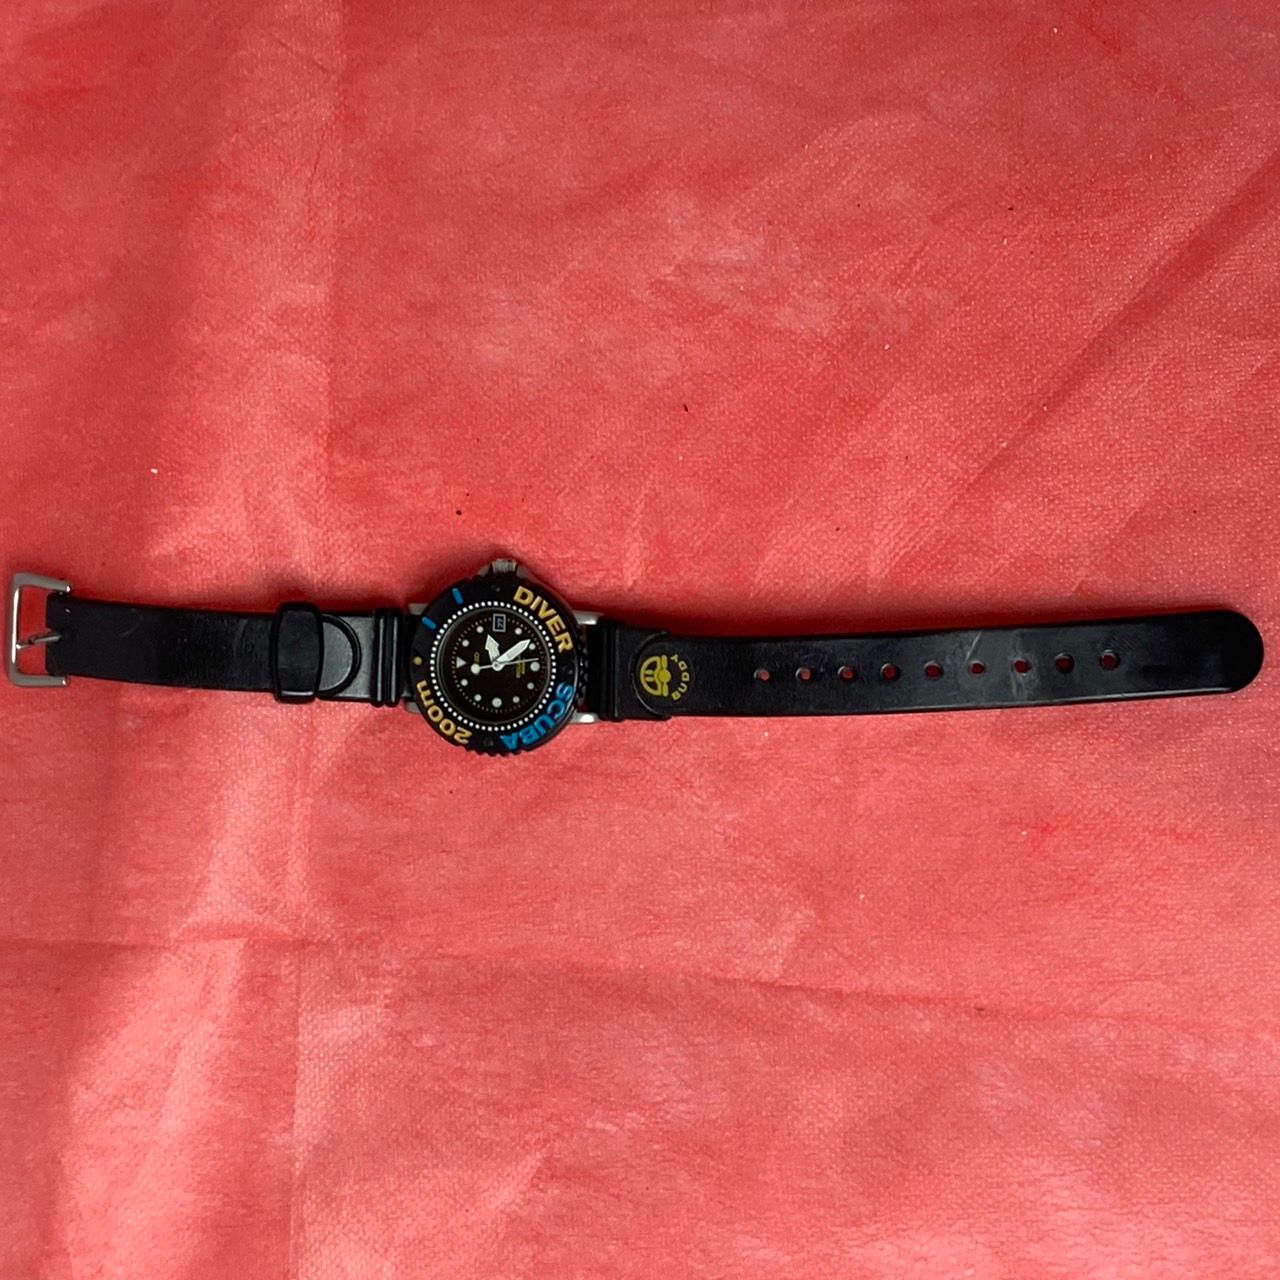 SEIKO】 クォーツ式腕時計 SCUBA ミニダイバー プラスチック製ベゼル